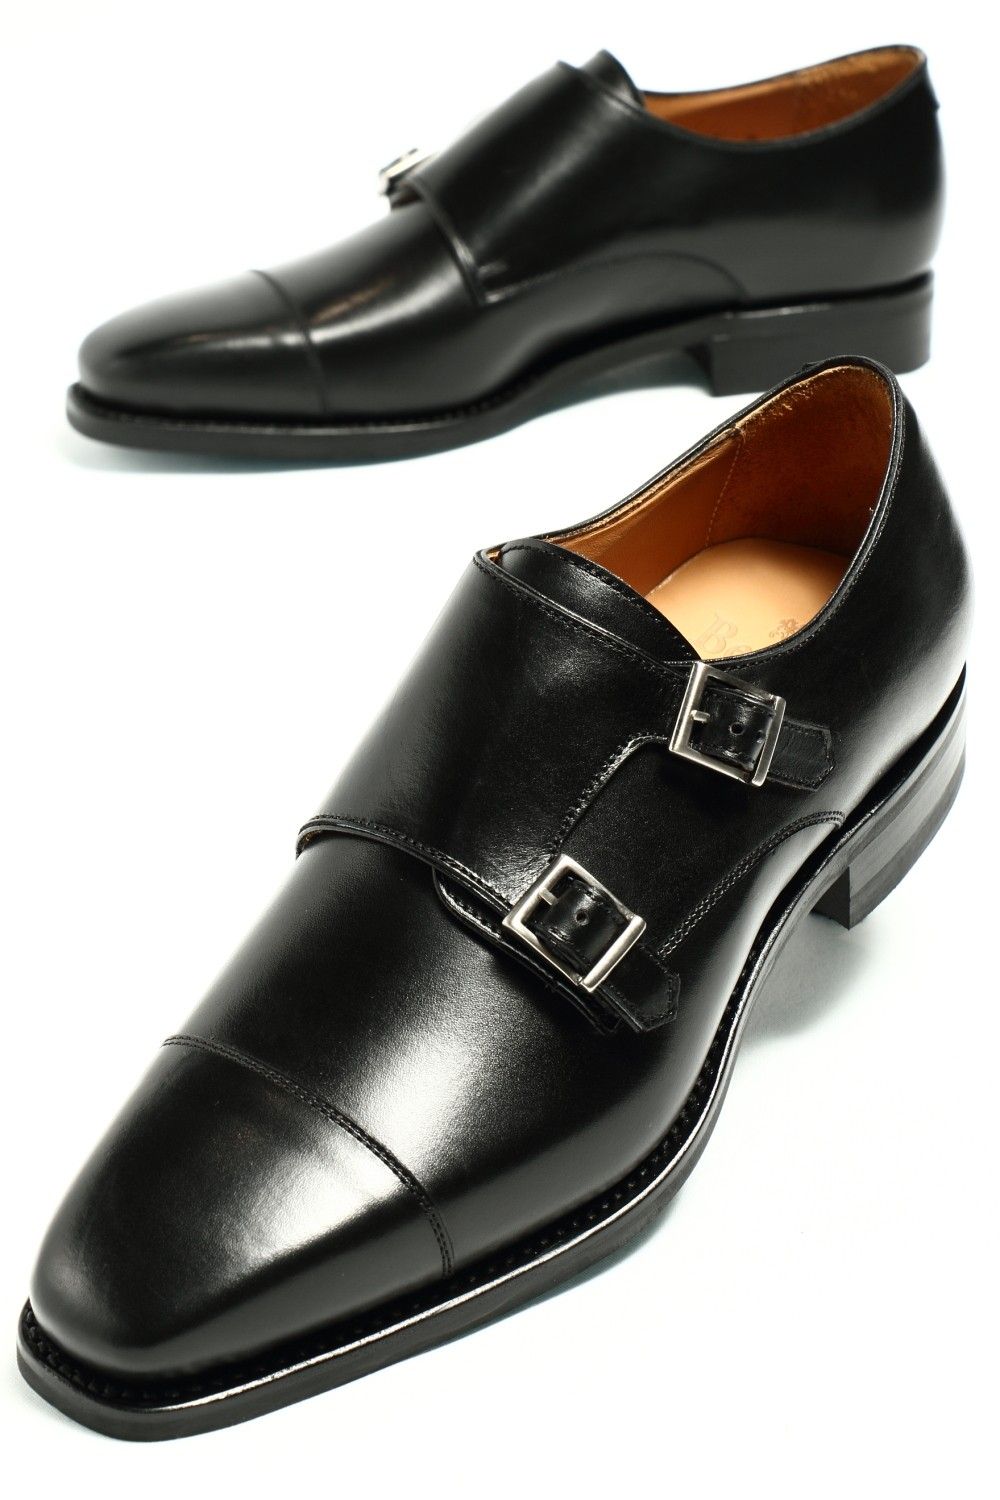 ダイナイトソール ボックスカーフ ダブルモンクストラップ シューズ 革靴 / ブラック NEGRO - UK6/24.5~25.0